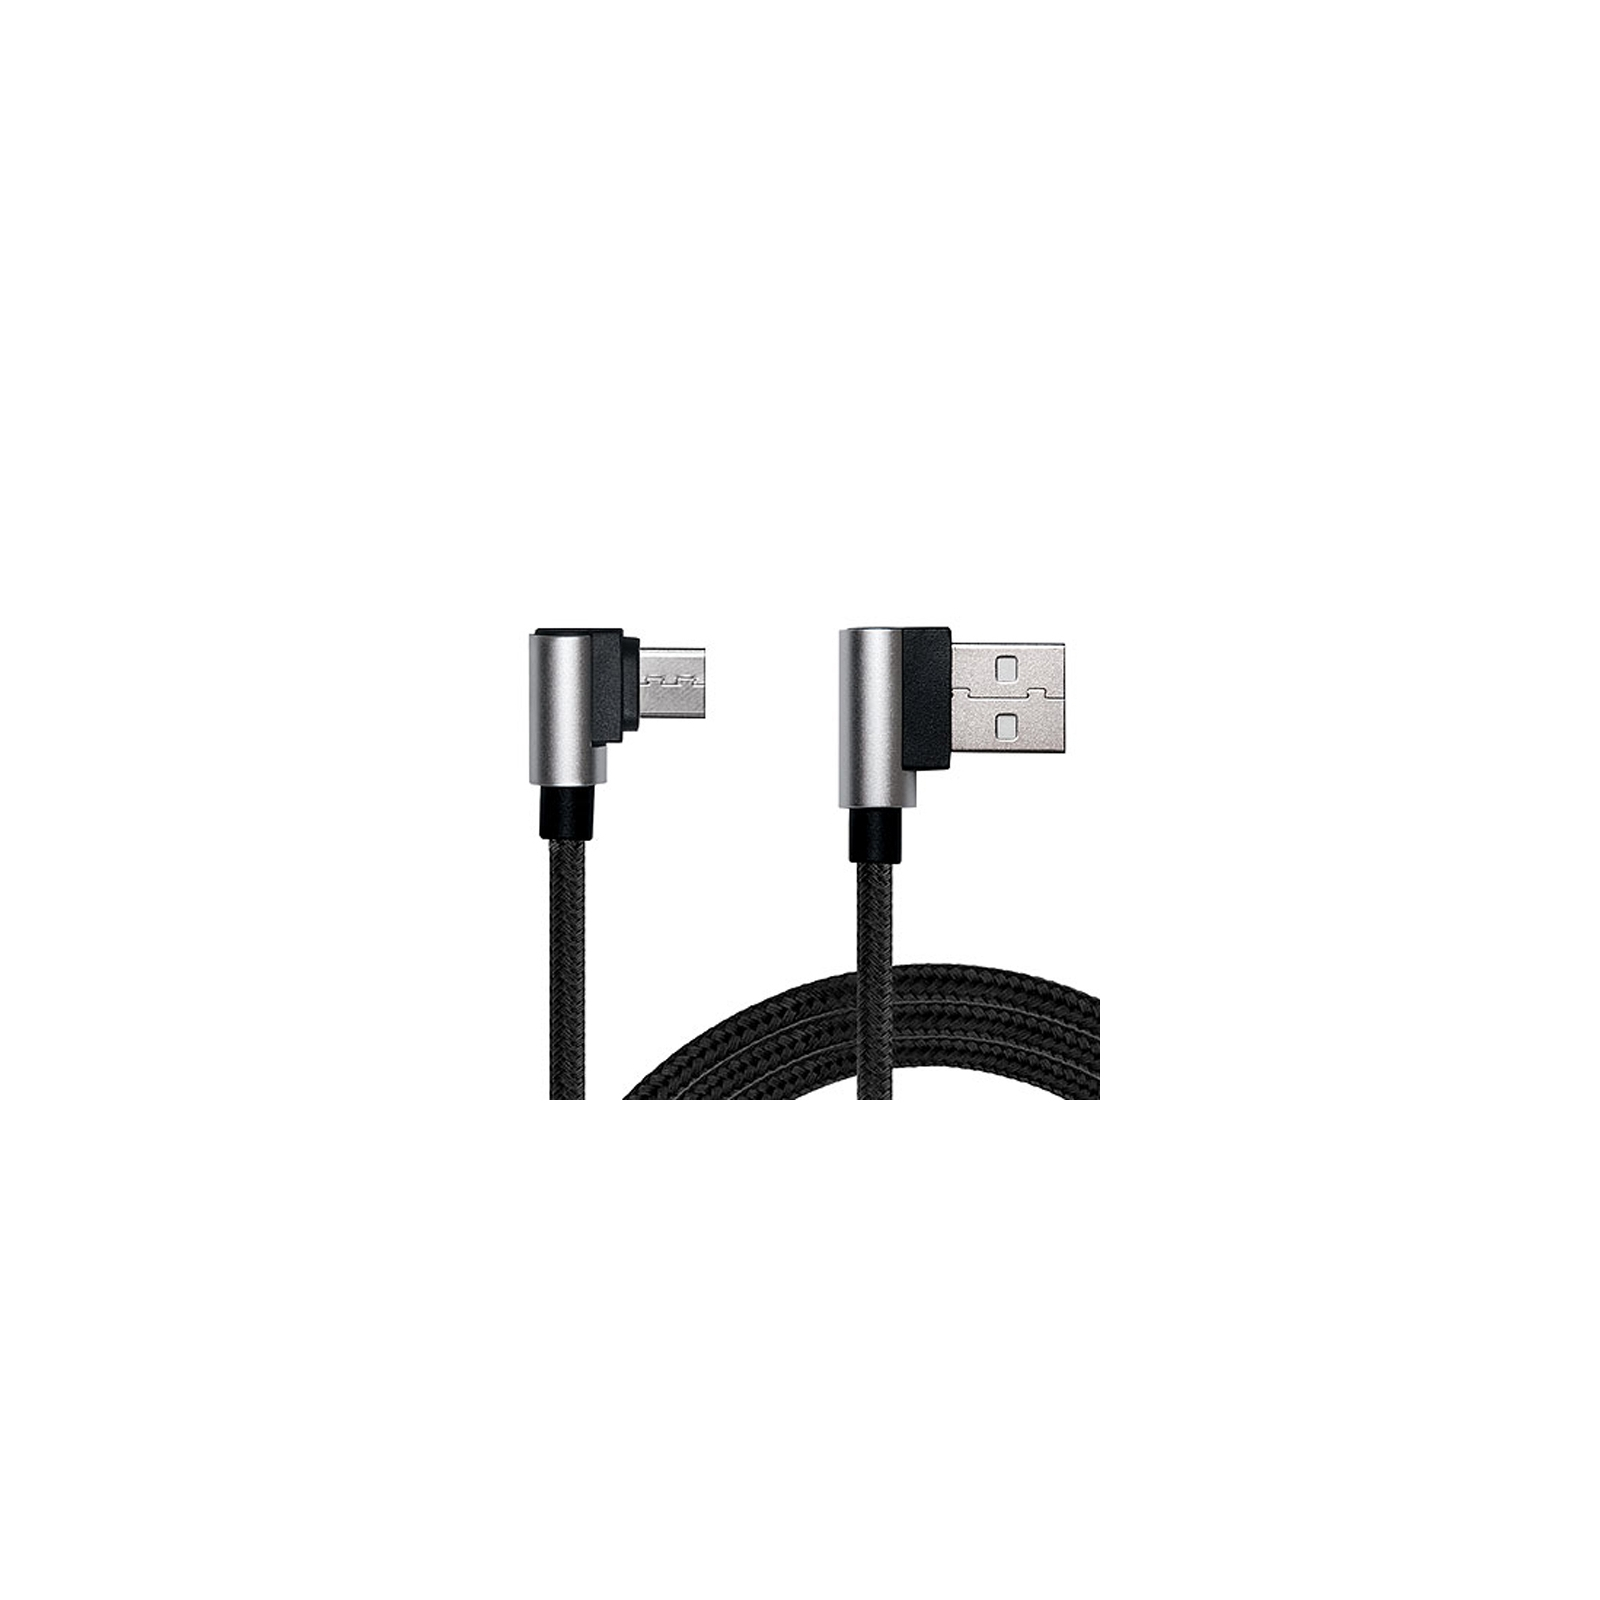 Дата кабель USB 2.0 AM to Type-C 1.0m Premium black REAL-EL (EL123500032) зображення 3